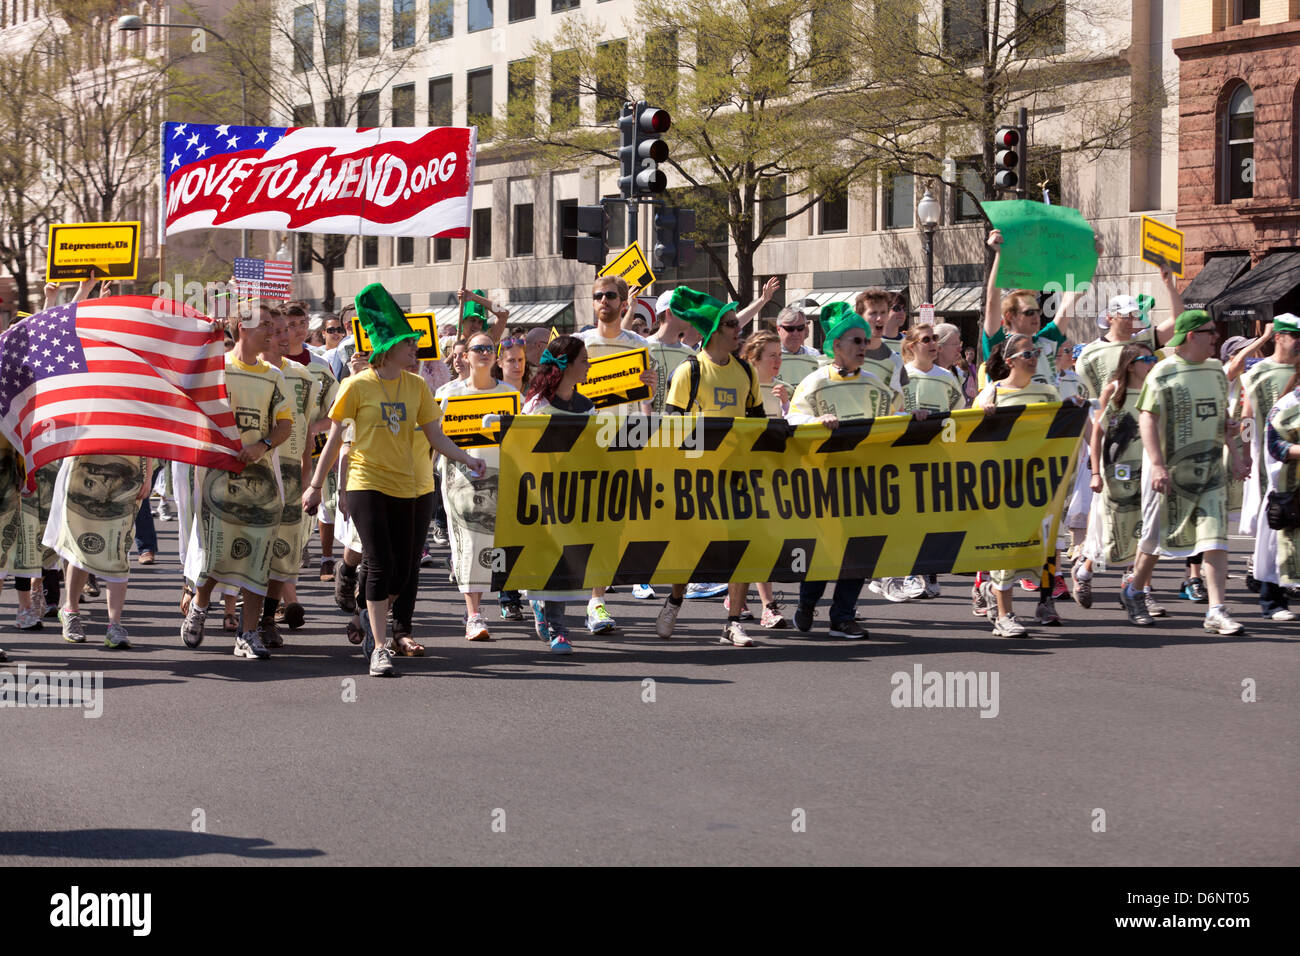 Nos representan los partidarios manifestación contra la corrupción política en el Gobierno de los EE.UU., Washington, D.C. Foto de stock